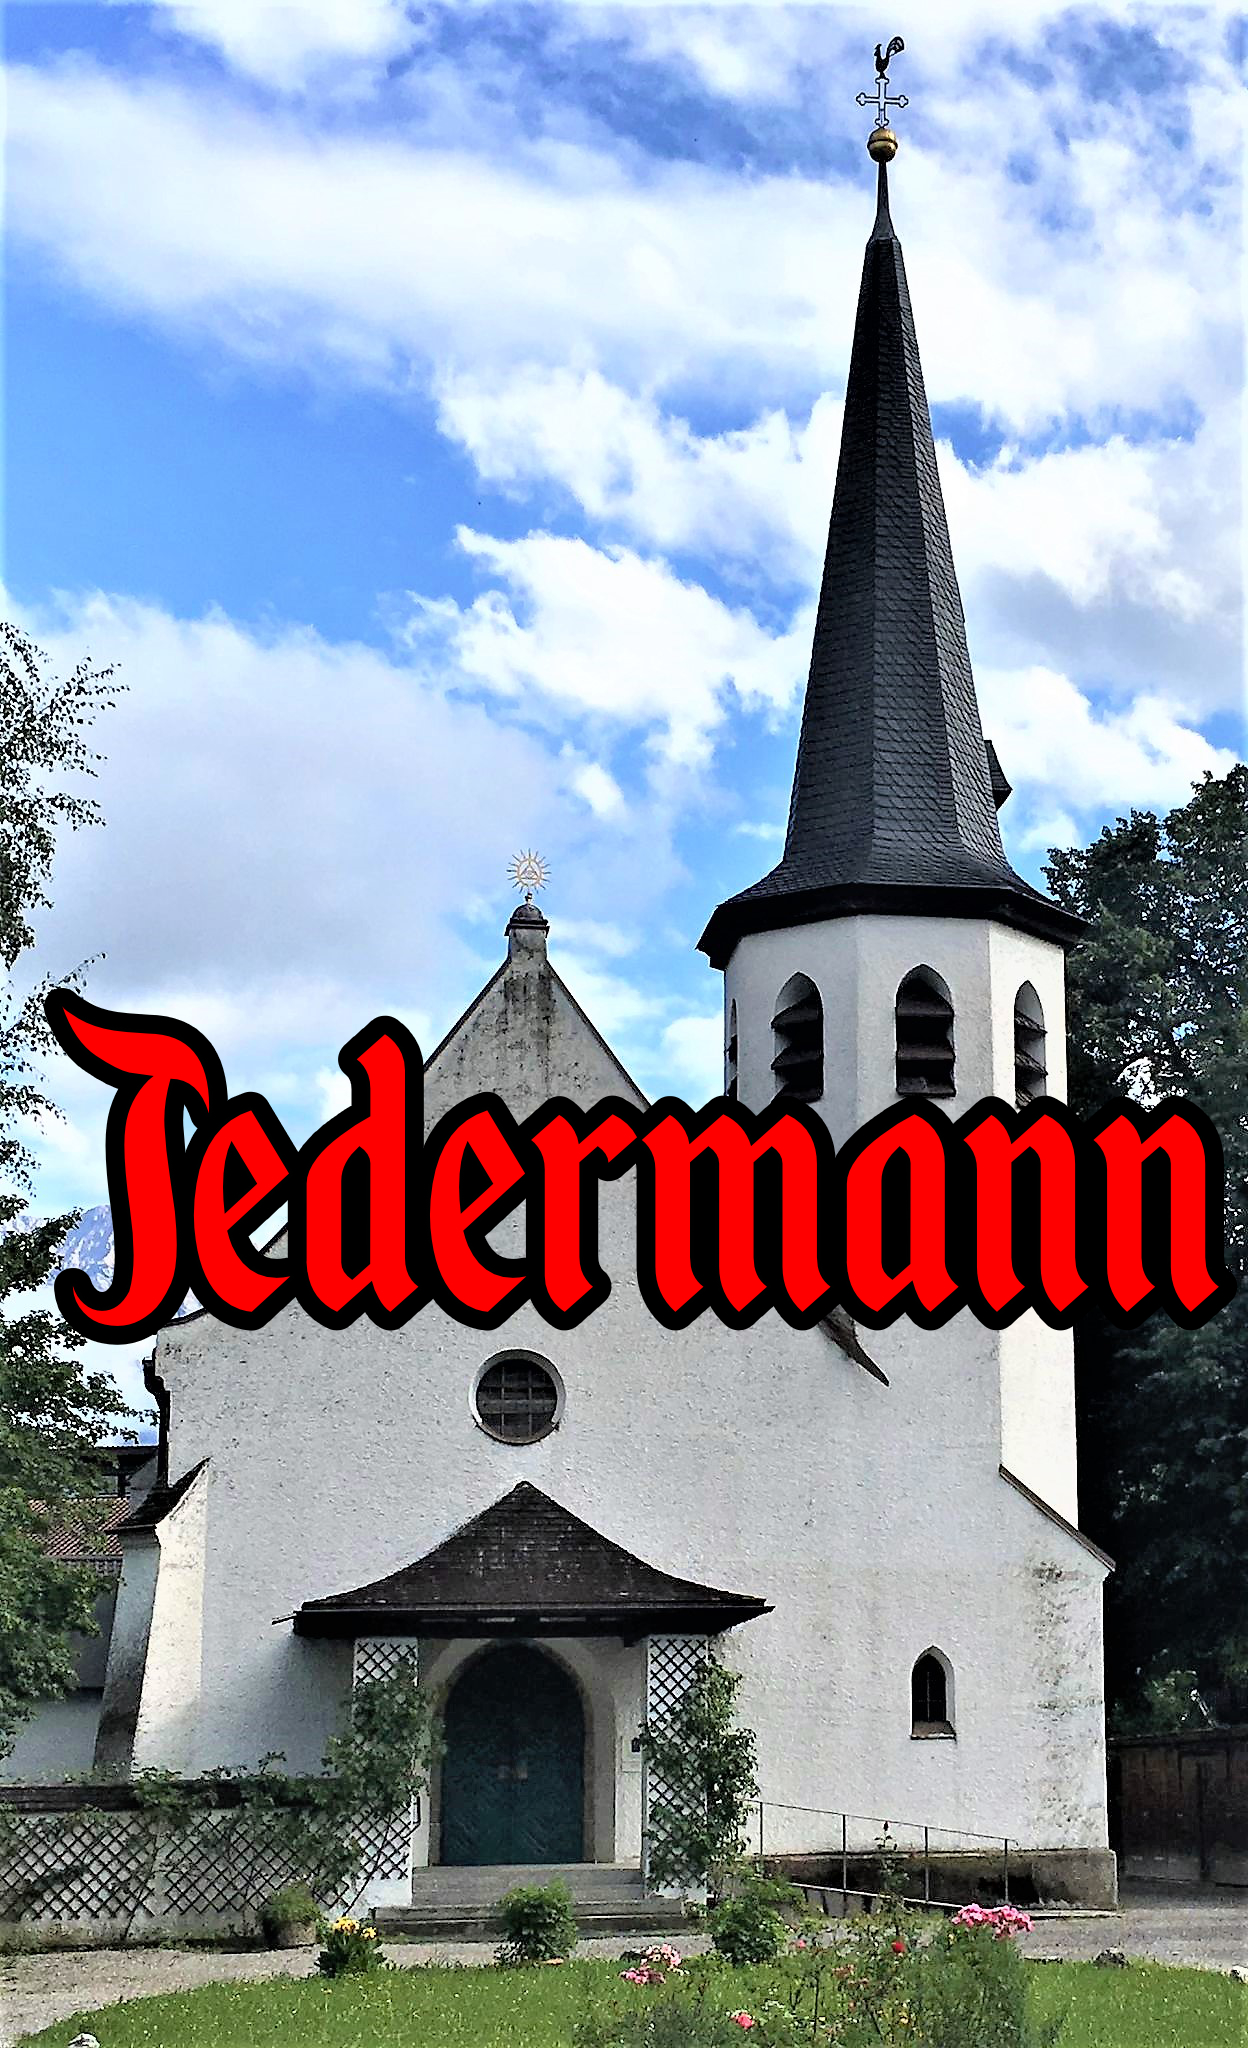 Sondervorstellung "Jedermann" in der Johanneskirche Partenkirchen